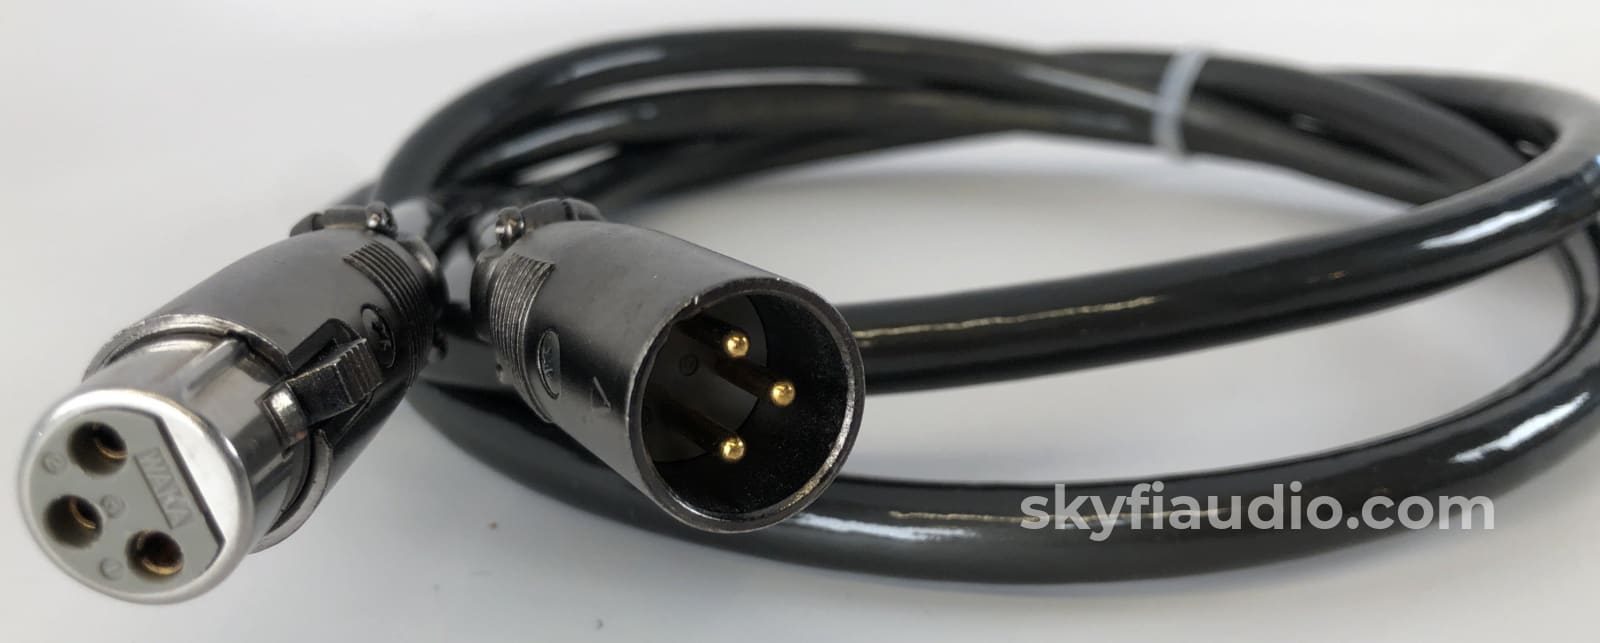 Audioquest Diamond Hyperlitz Xlr Audio Cable - 1M Cables